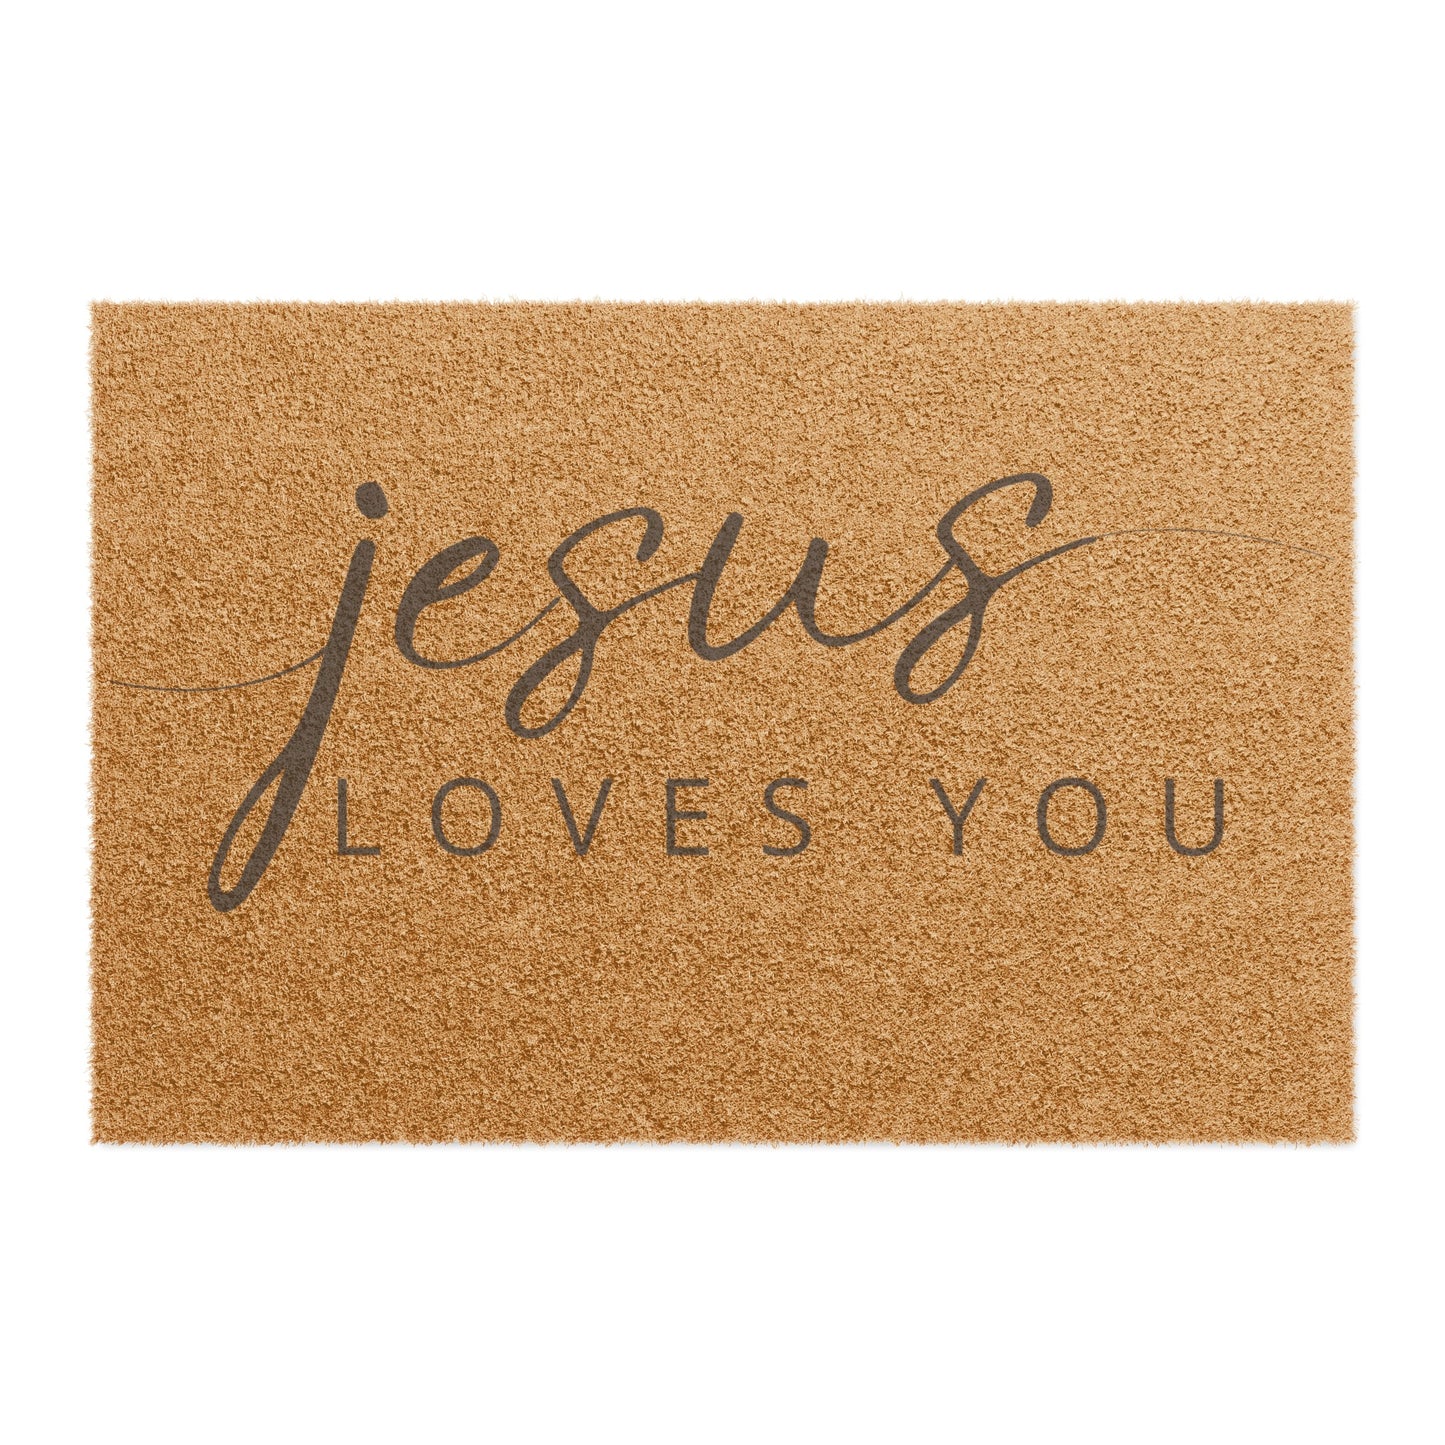 Jesus Loves You Doormat